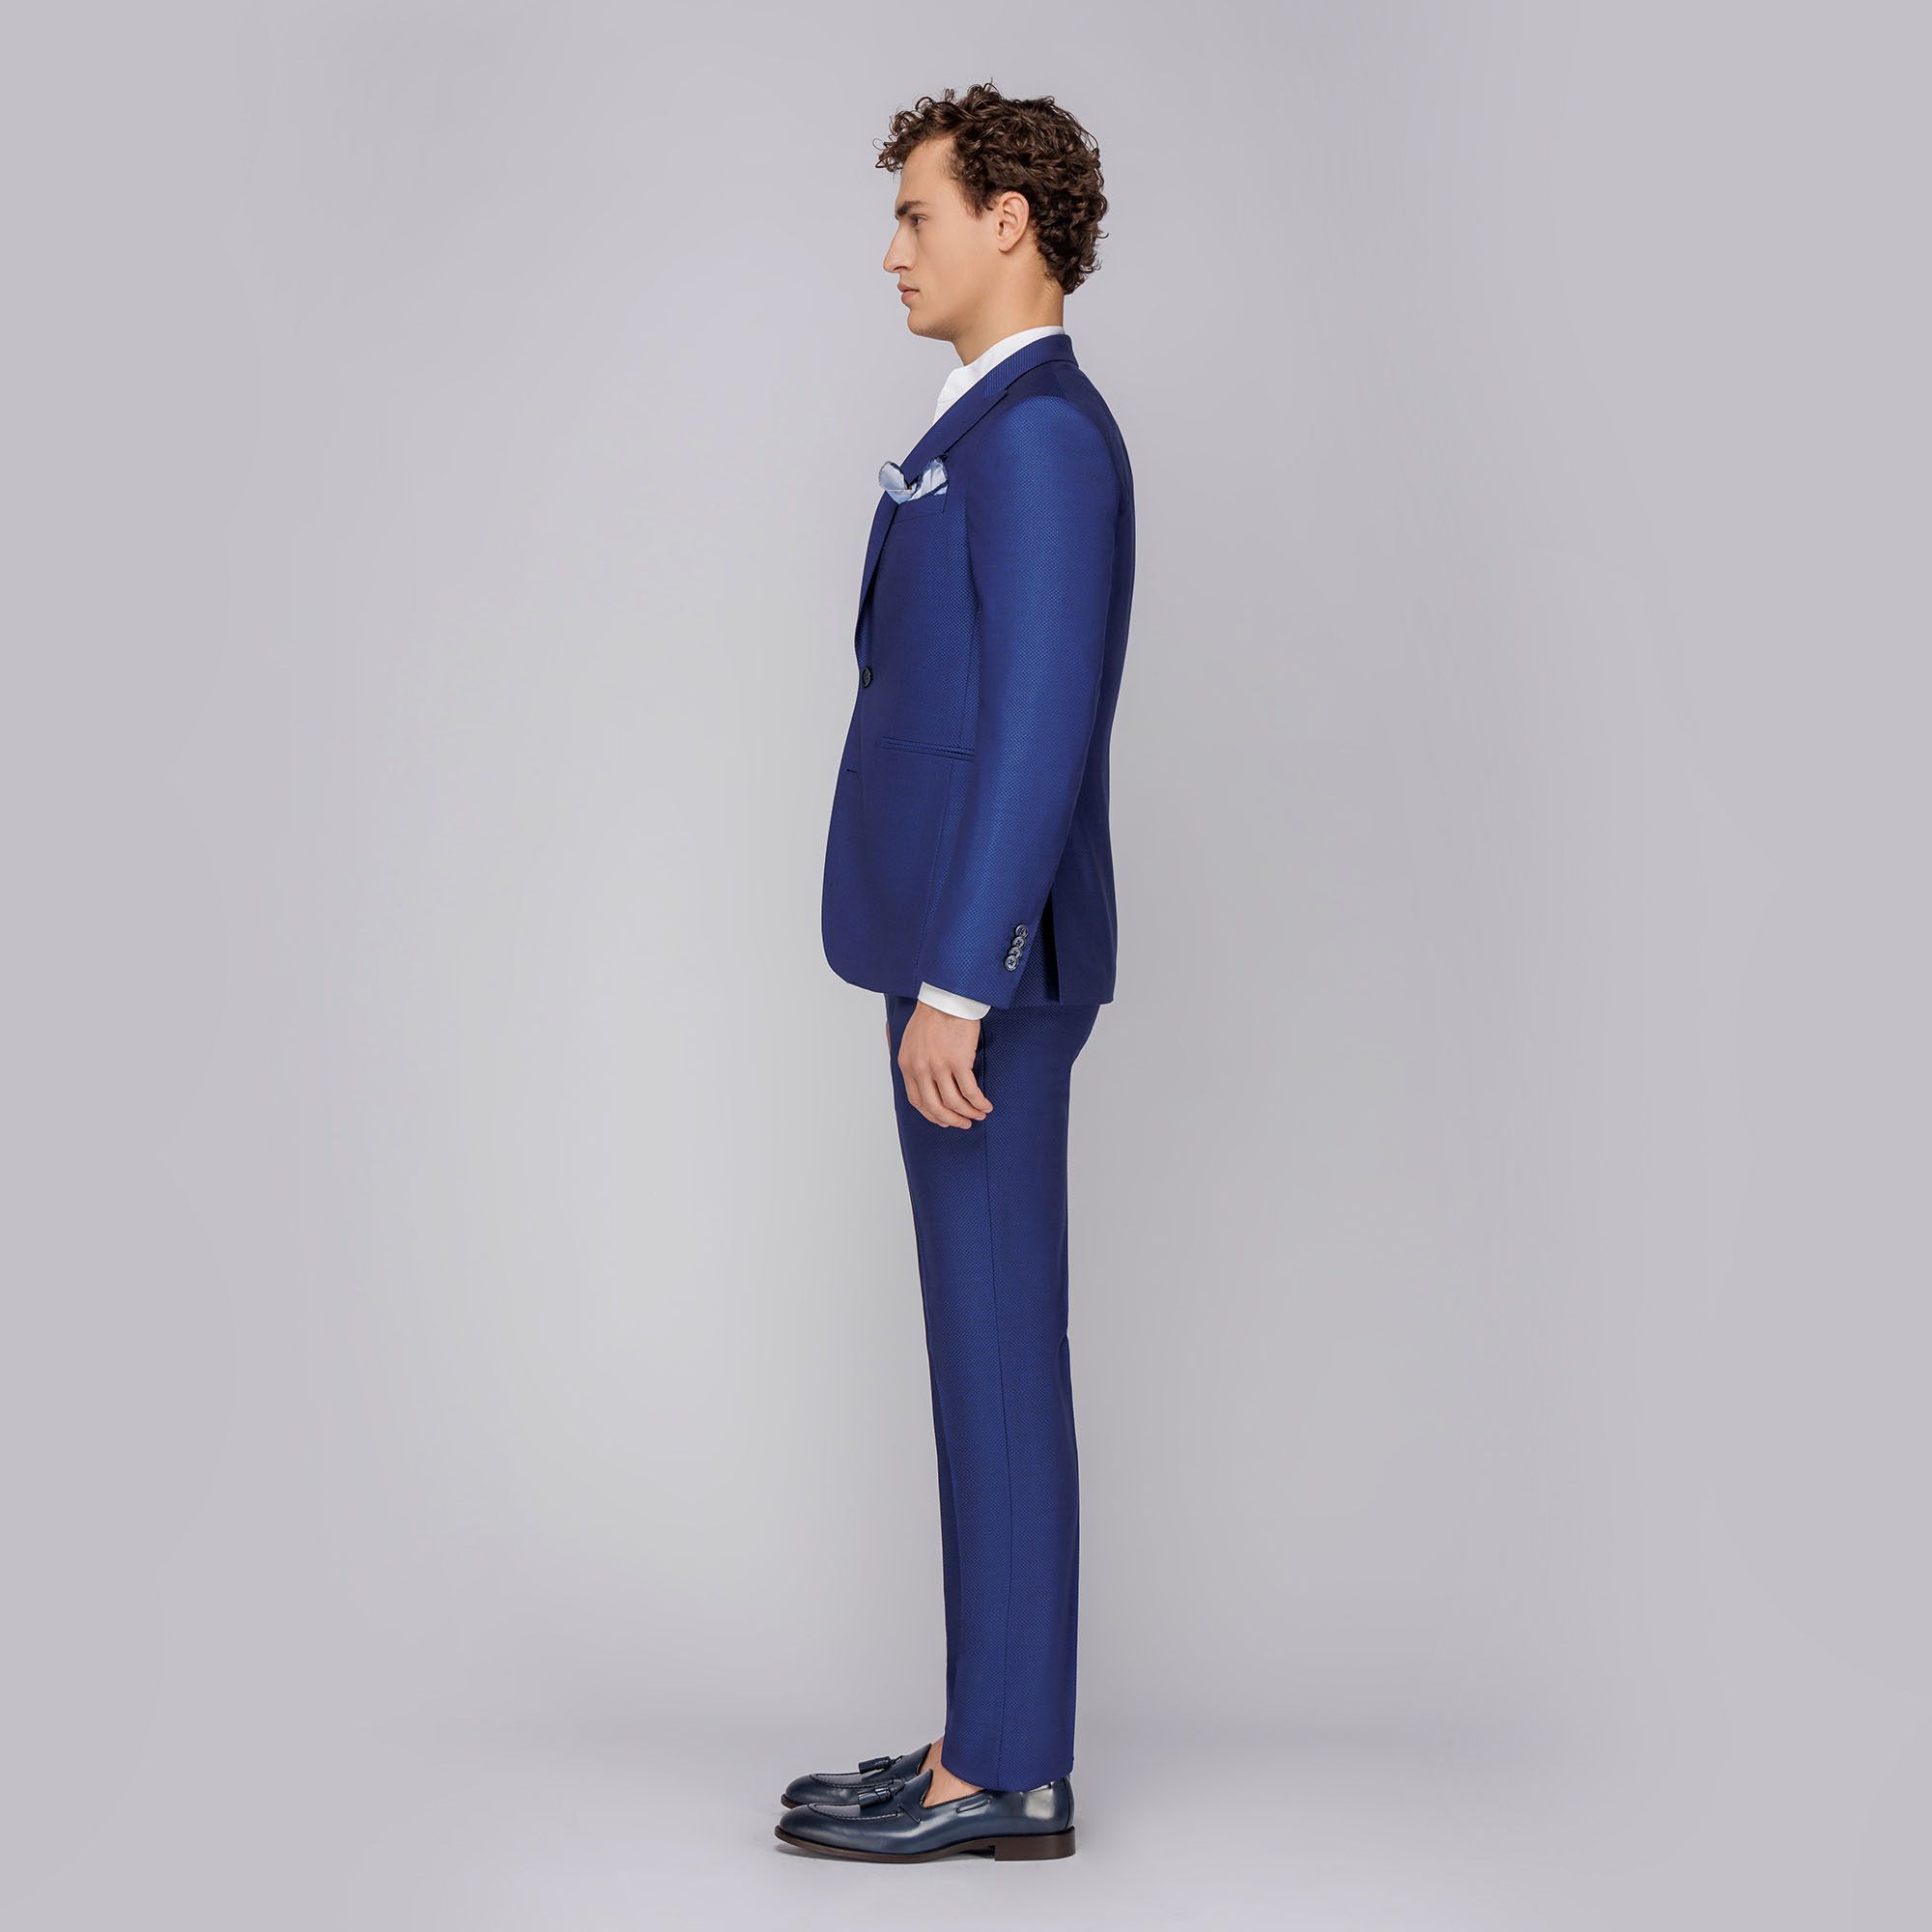 Men's 3-piece royal blue suit